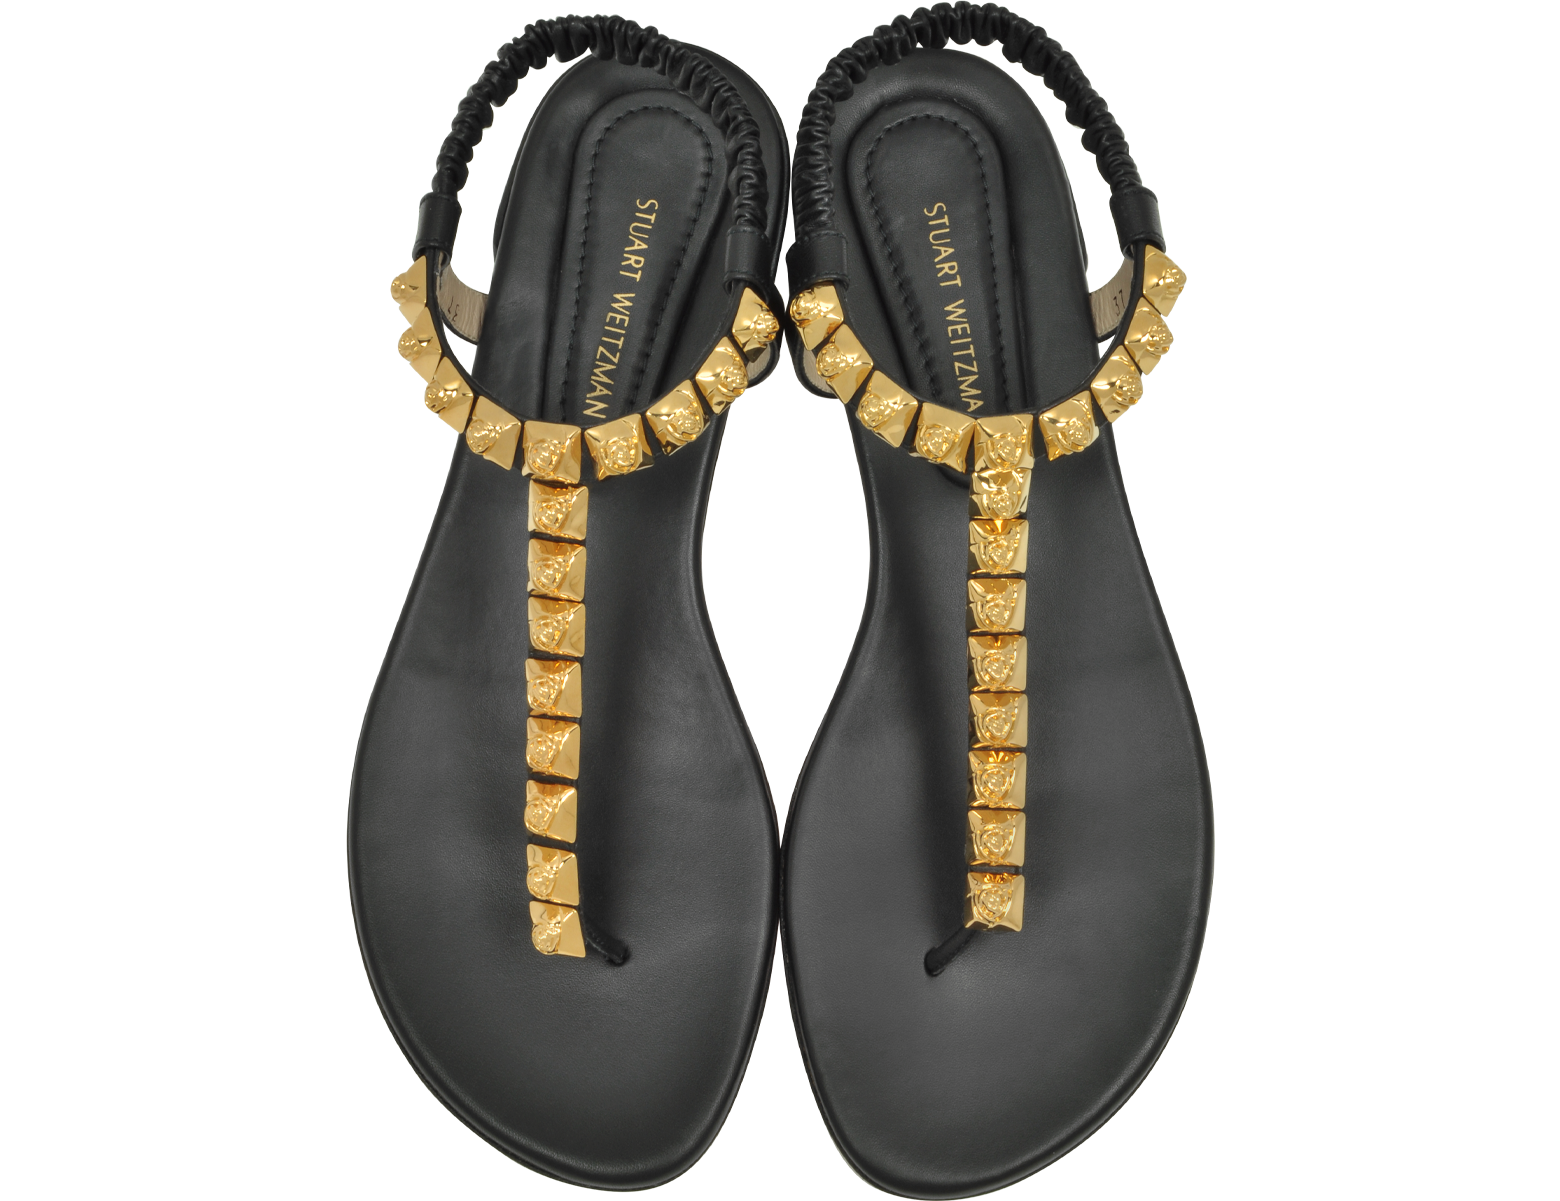 Stuart Weitzman Black LeatherThe Esme Flat Sandals 35 IT/EU at FORZIERI